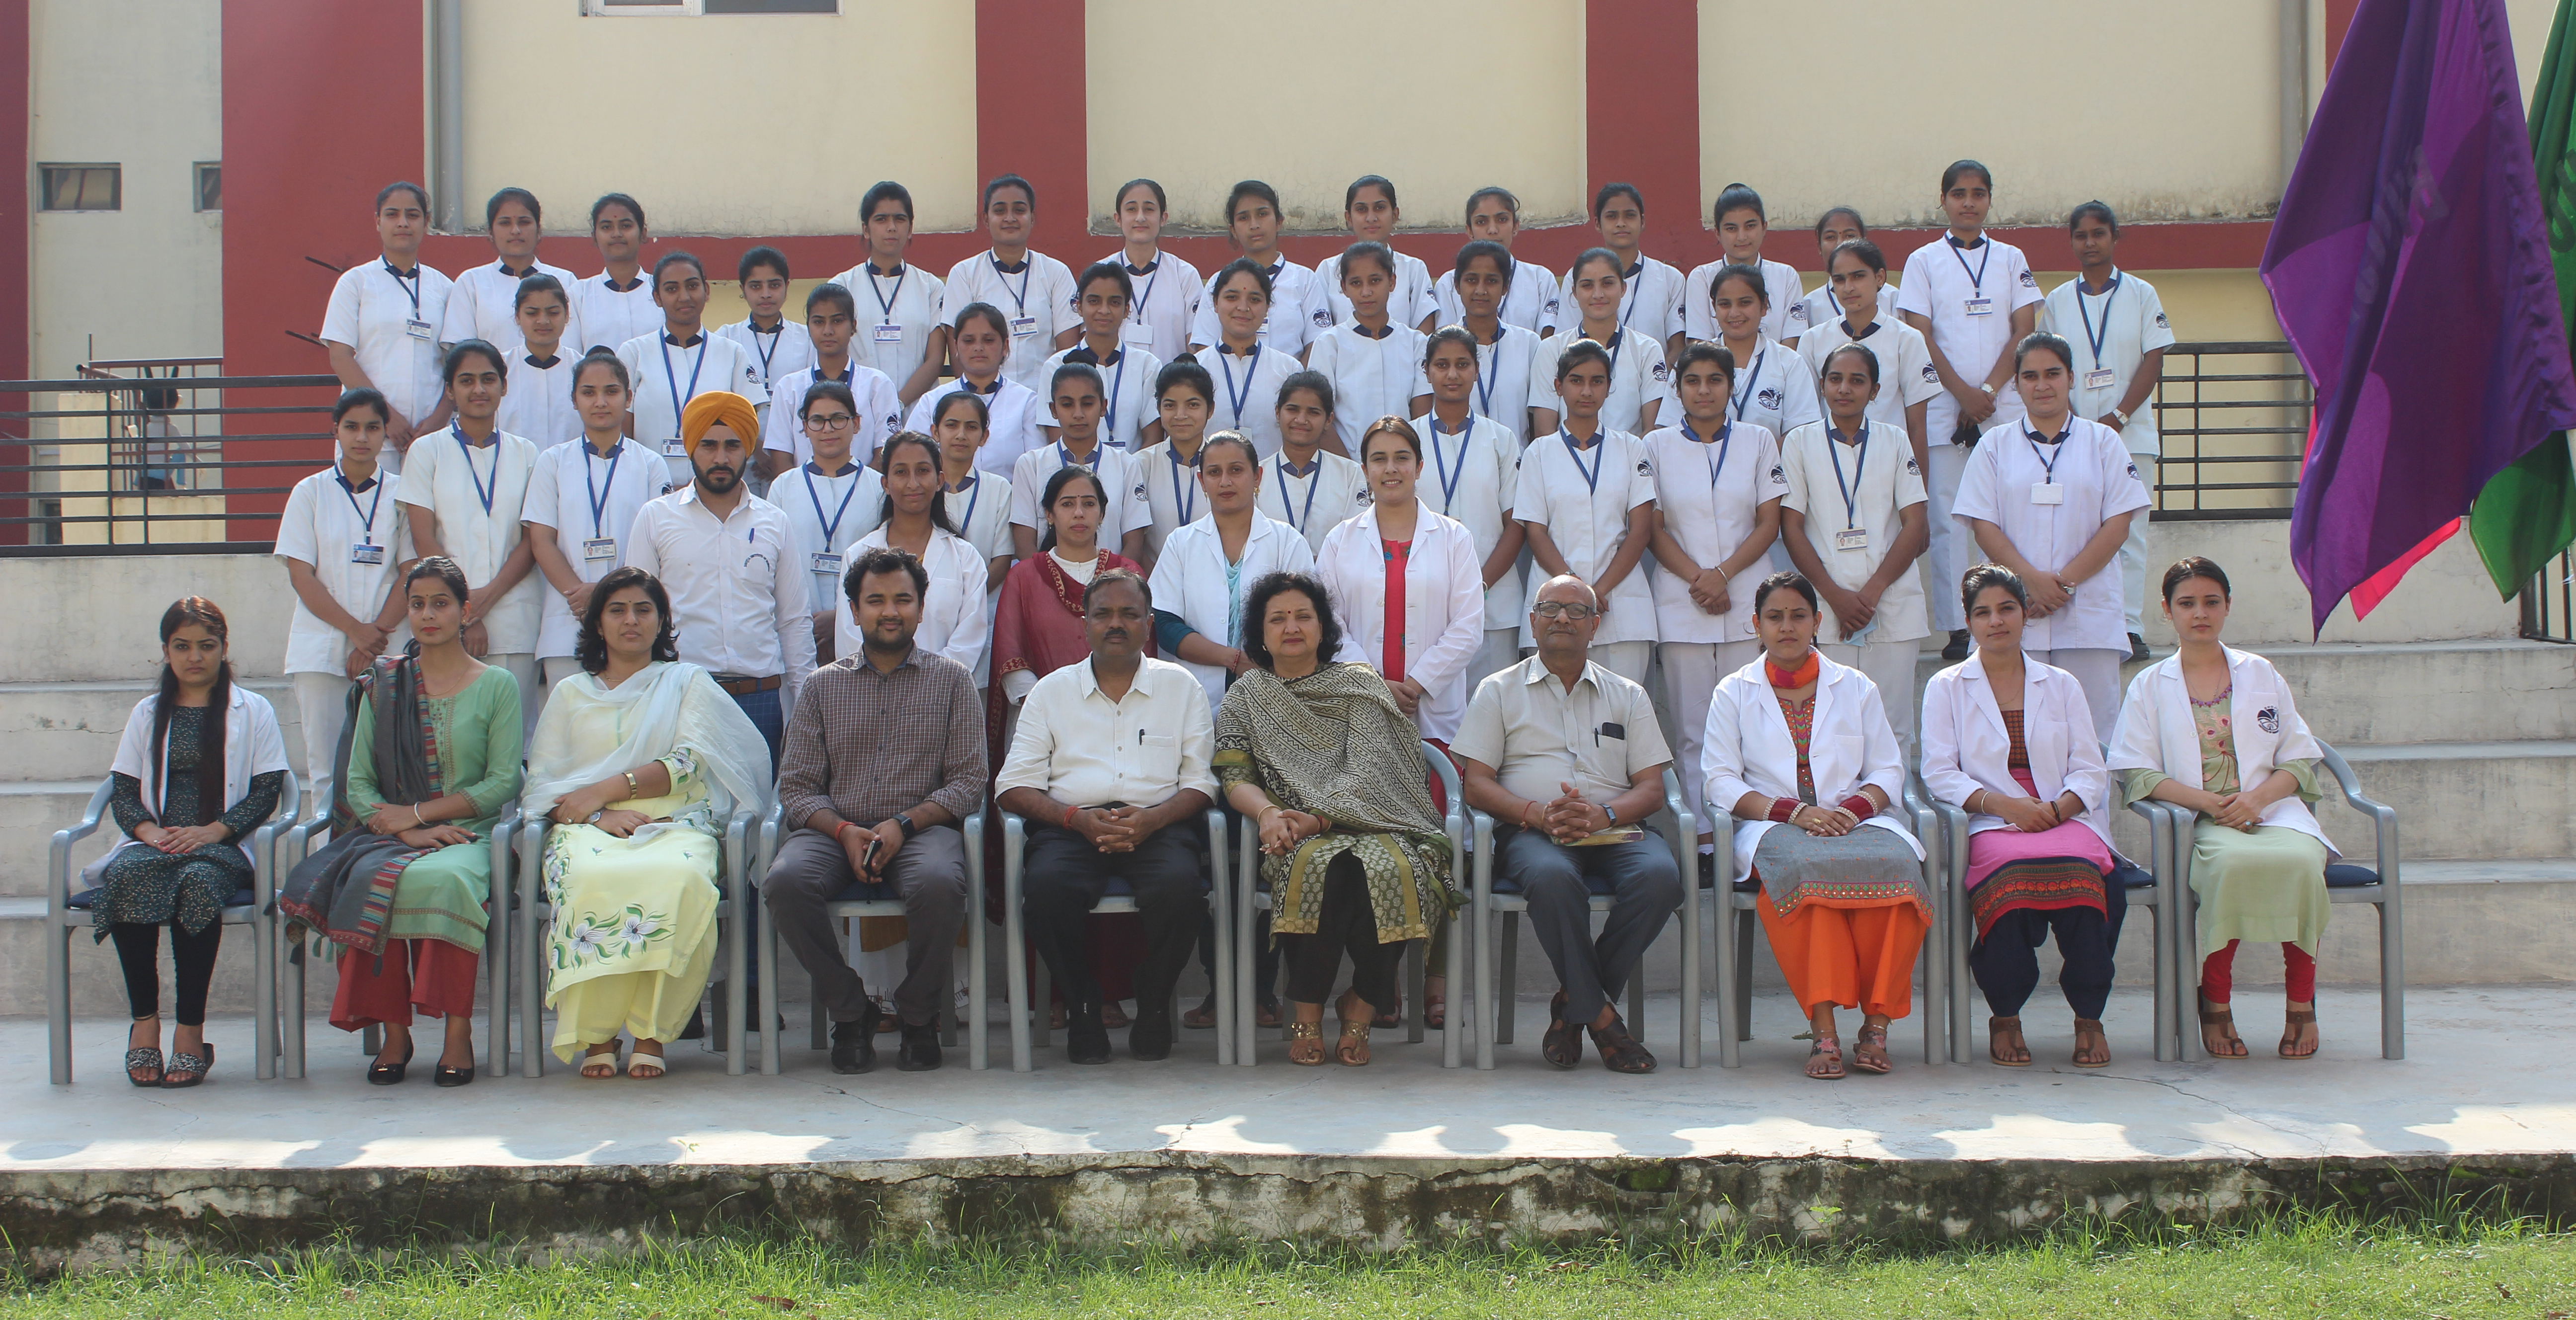 Bhojia Institute of Nursing